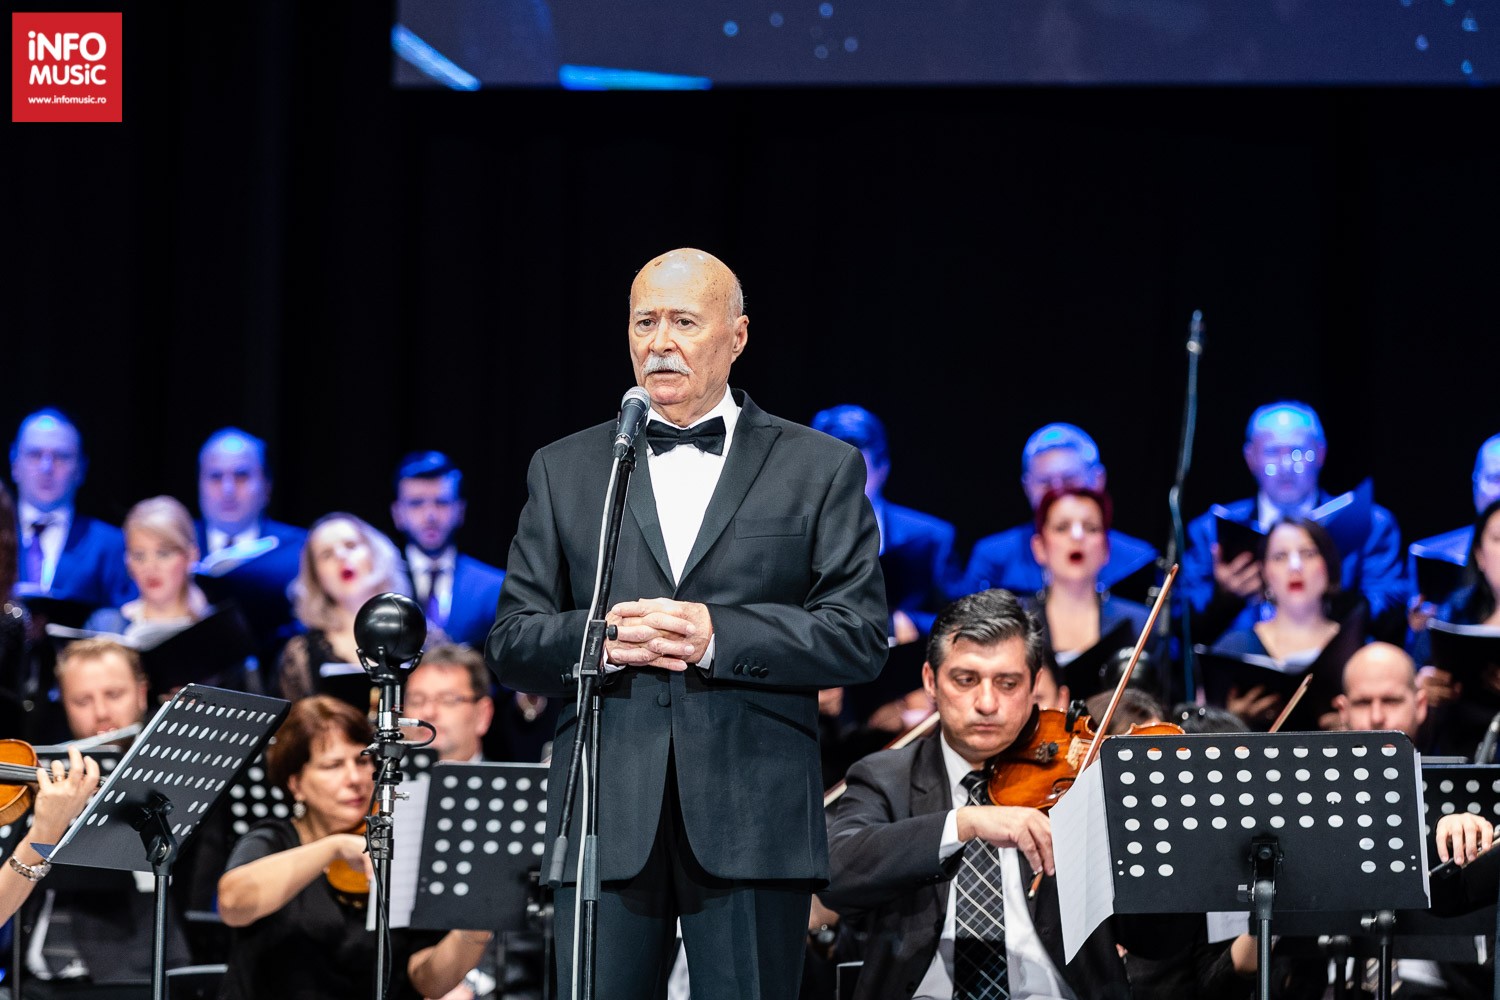 Tudor Gheorghe în concertul DEGEABA 30 din 22 decembrie 2019